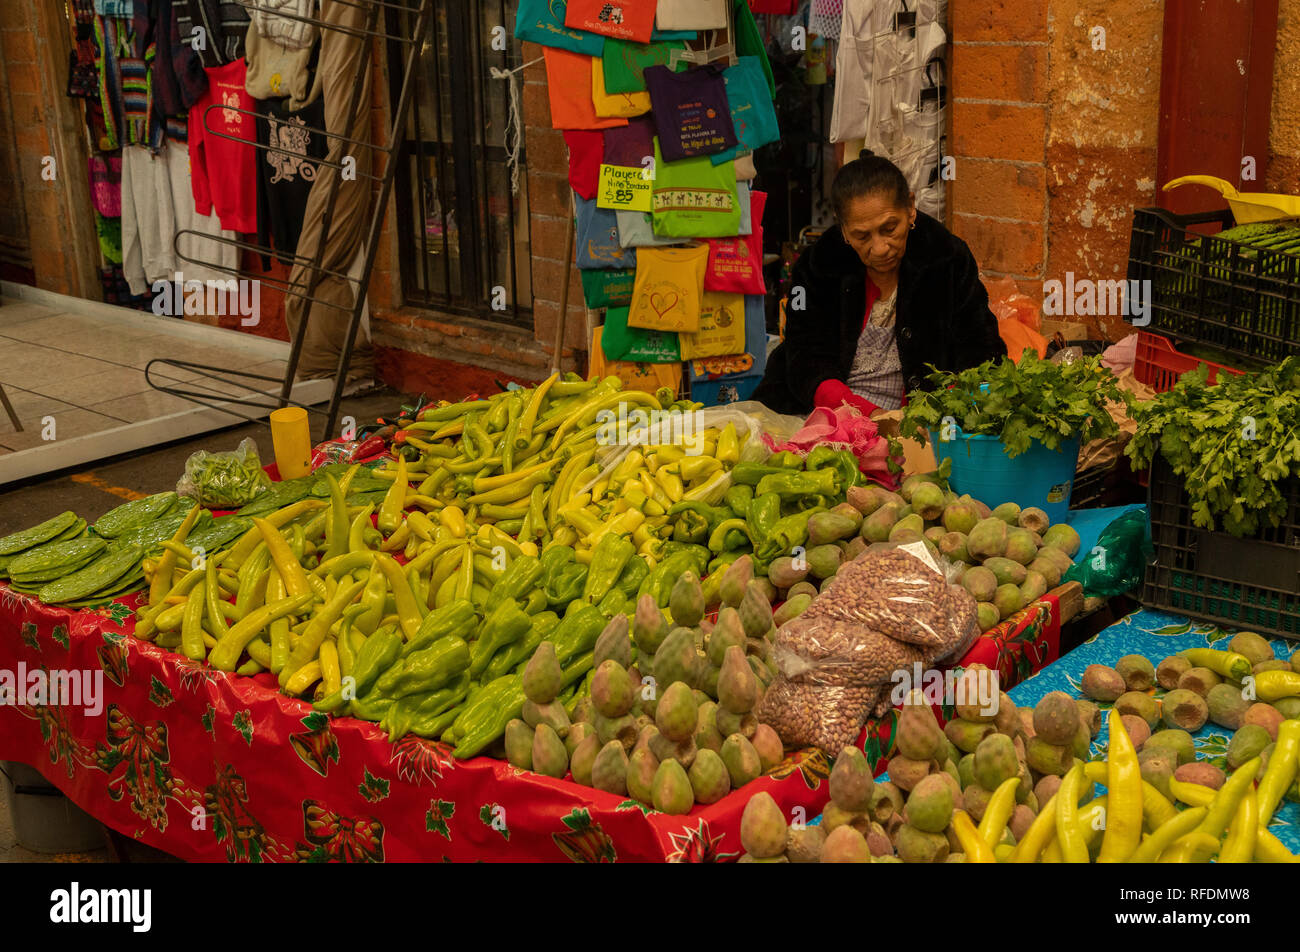 Stand de fruits et légumes, spécialisée dans les fruits et les feuilles de figue de Barbarie ; marché, San Miguel de Allende, Mexique central. Banque D'Images